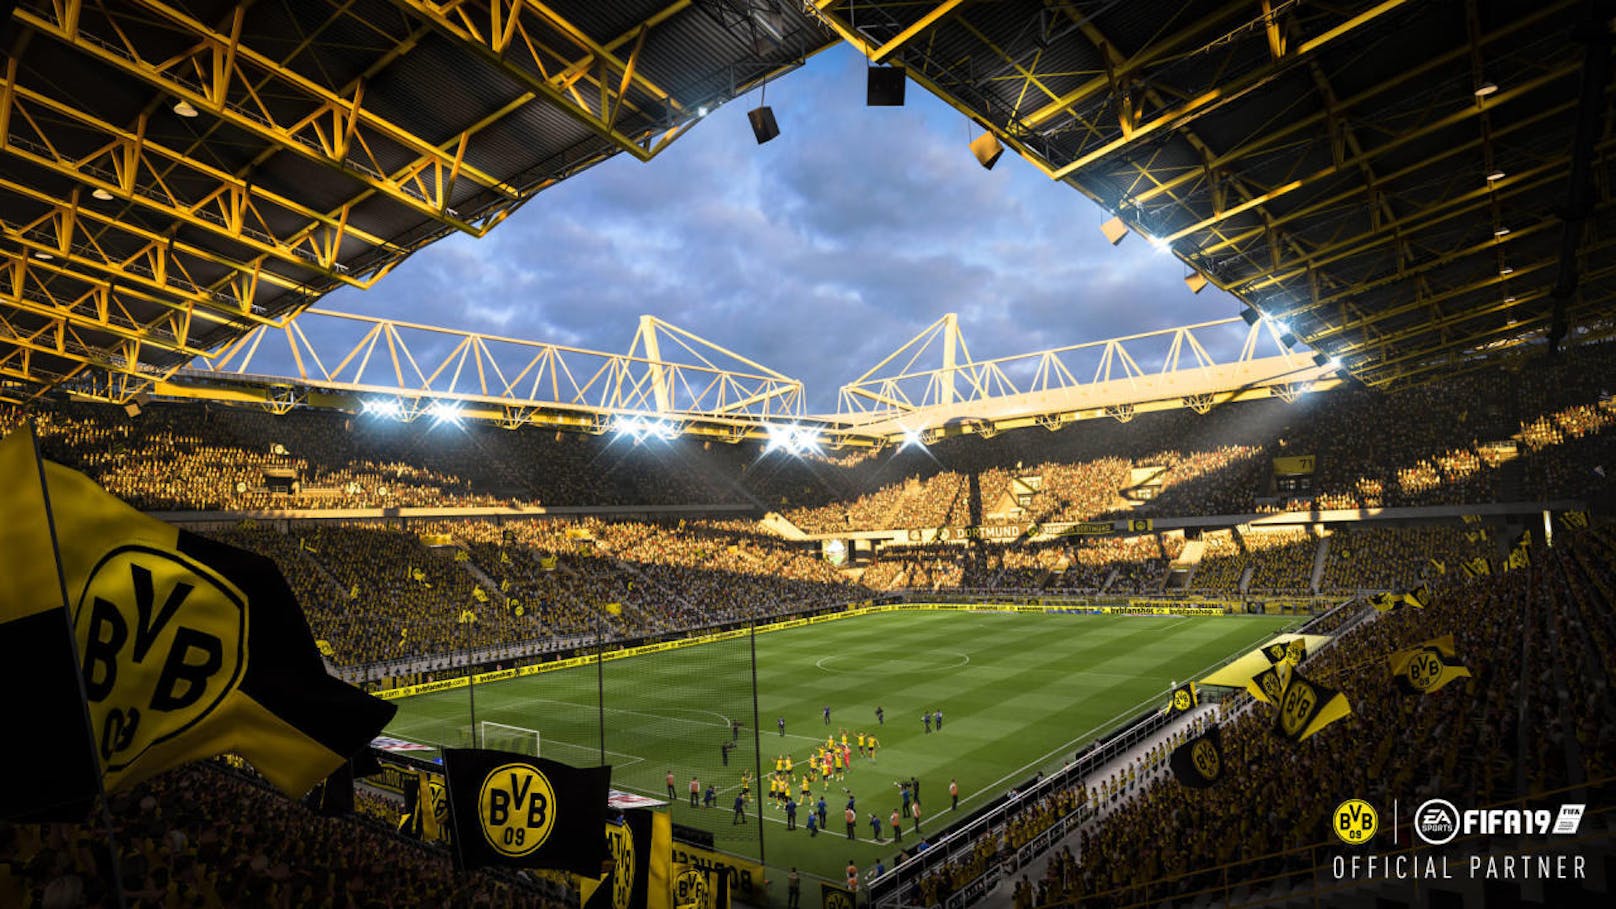 Zum Saisonstart der Bundesliga geben Electronic Arts und Borussia Dortmund ihre offizielle Partnerschaft bekannt. Beide Parteien gehören zu den weltweit führenden Marken im Bereich Sport und Sportunterhaltung. Der Signal Iduna Park, die Heimspielstätte des BVB, sorgt für ein intensives und atmosphärisches Spielerlebnis. Zugleich sind dank der Power der Frostbite-Engine neue und aktualisierte Headscans der Dortmunder Stars um Marco Reus und Mario Götze in EA Sports FIFA 19 enthalten.